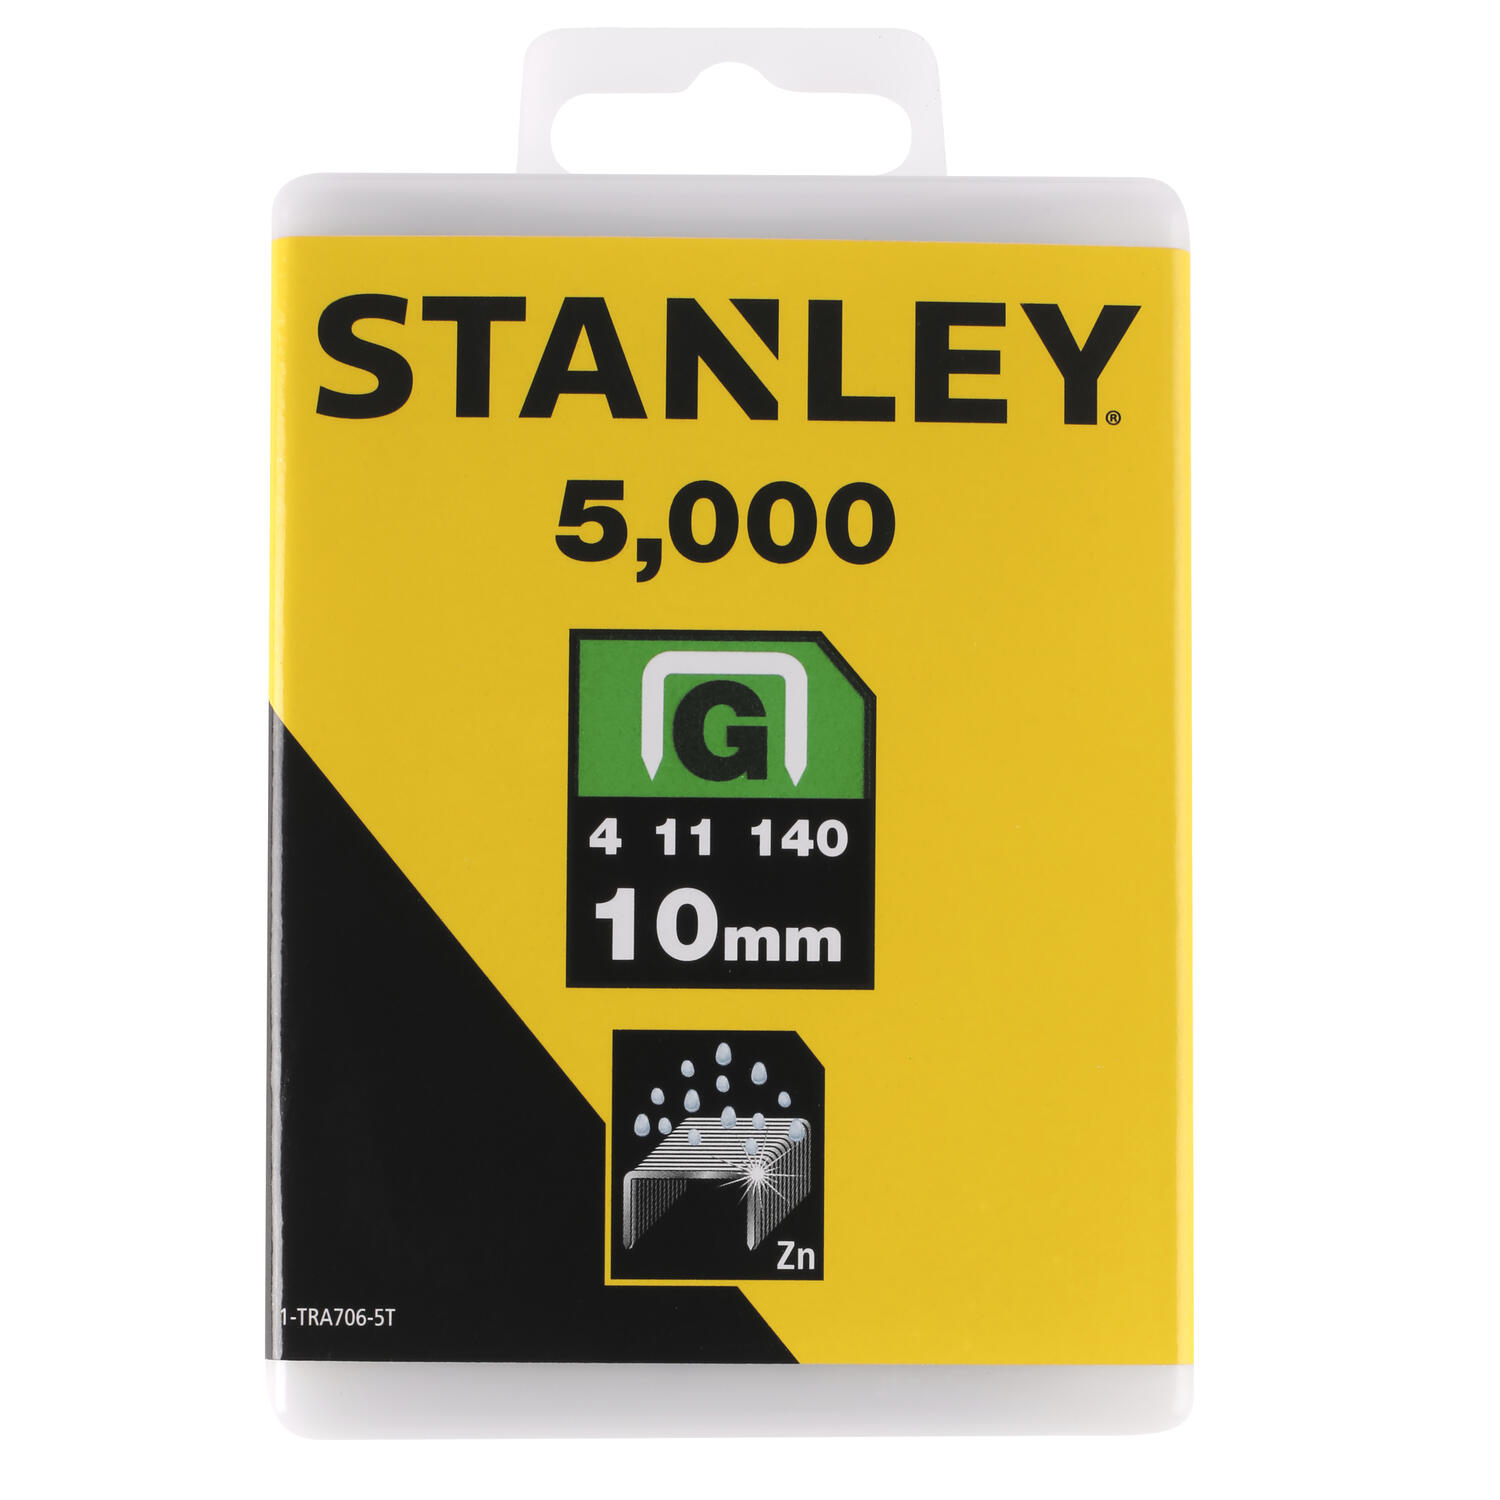 Stanley nieten type G 10mm 5000 stuks